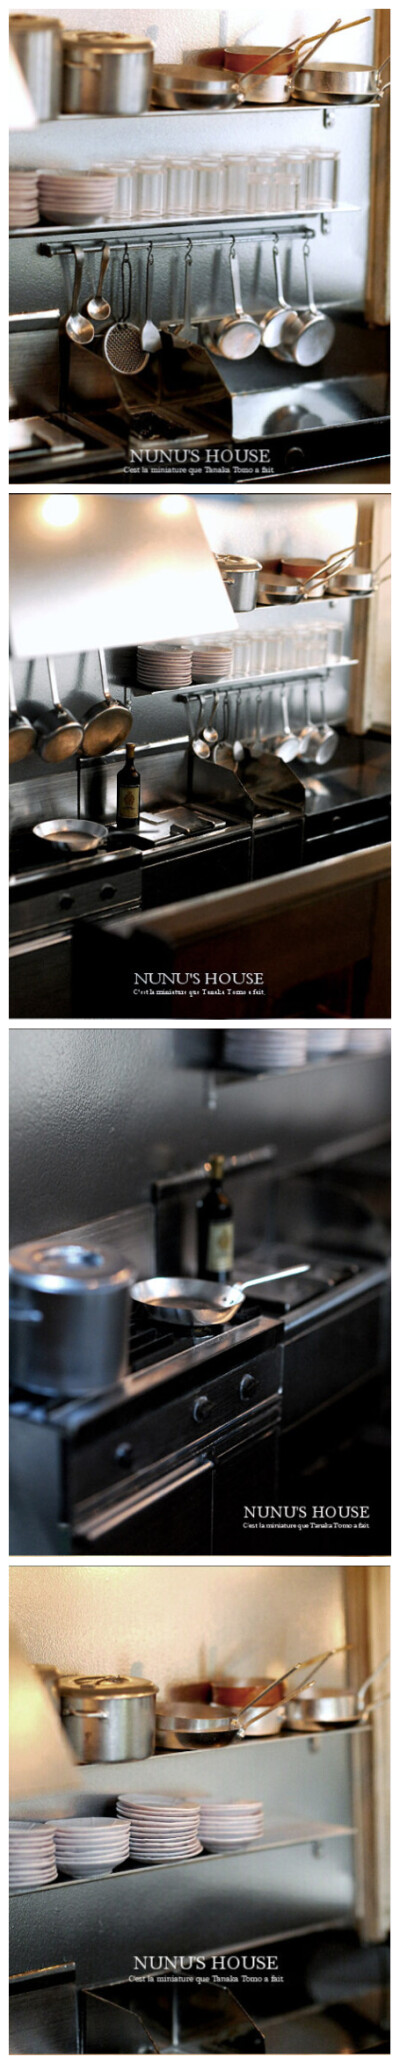 做工非常精致的日本牌子 【NUNU'S HOUSE】 【NUNU'S HOUSE】以制作12分的精美娃屋道具而闻名日本。只有手指大小的食物却异常精美。作者每次制作完成后，会发布到雅虎拍卖网进行贩卖，价格当然不菲。最新作品全部长宽…